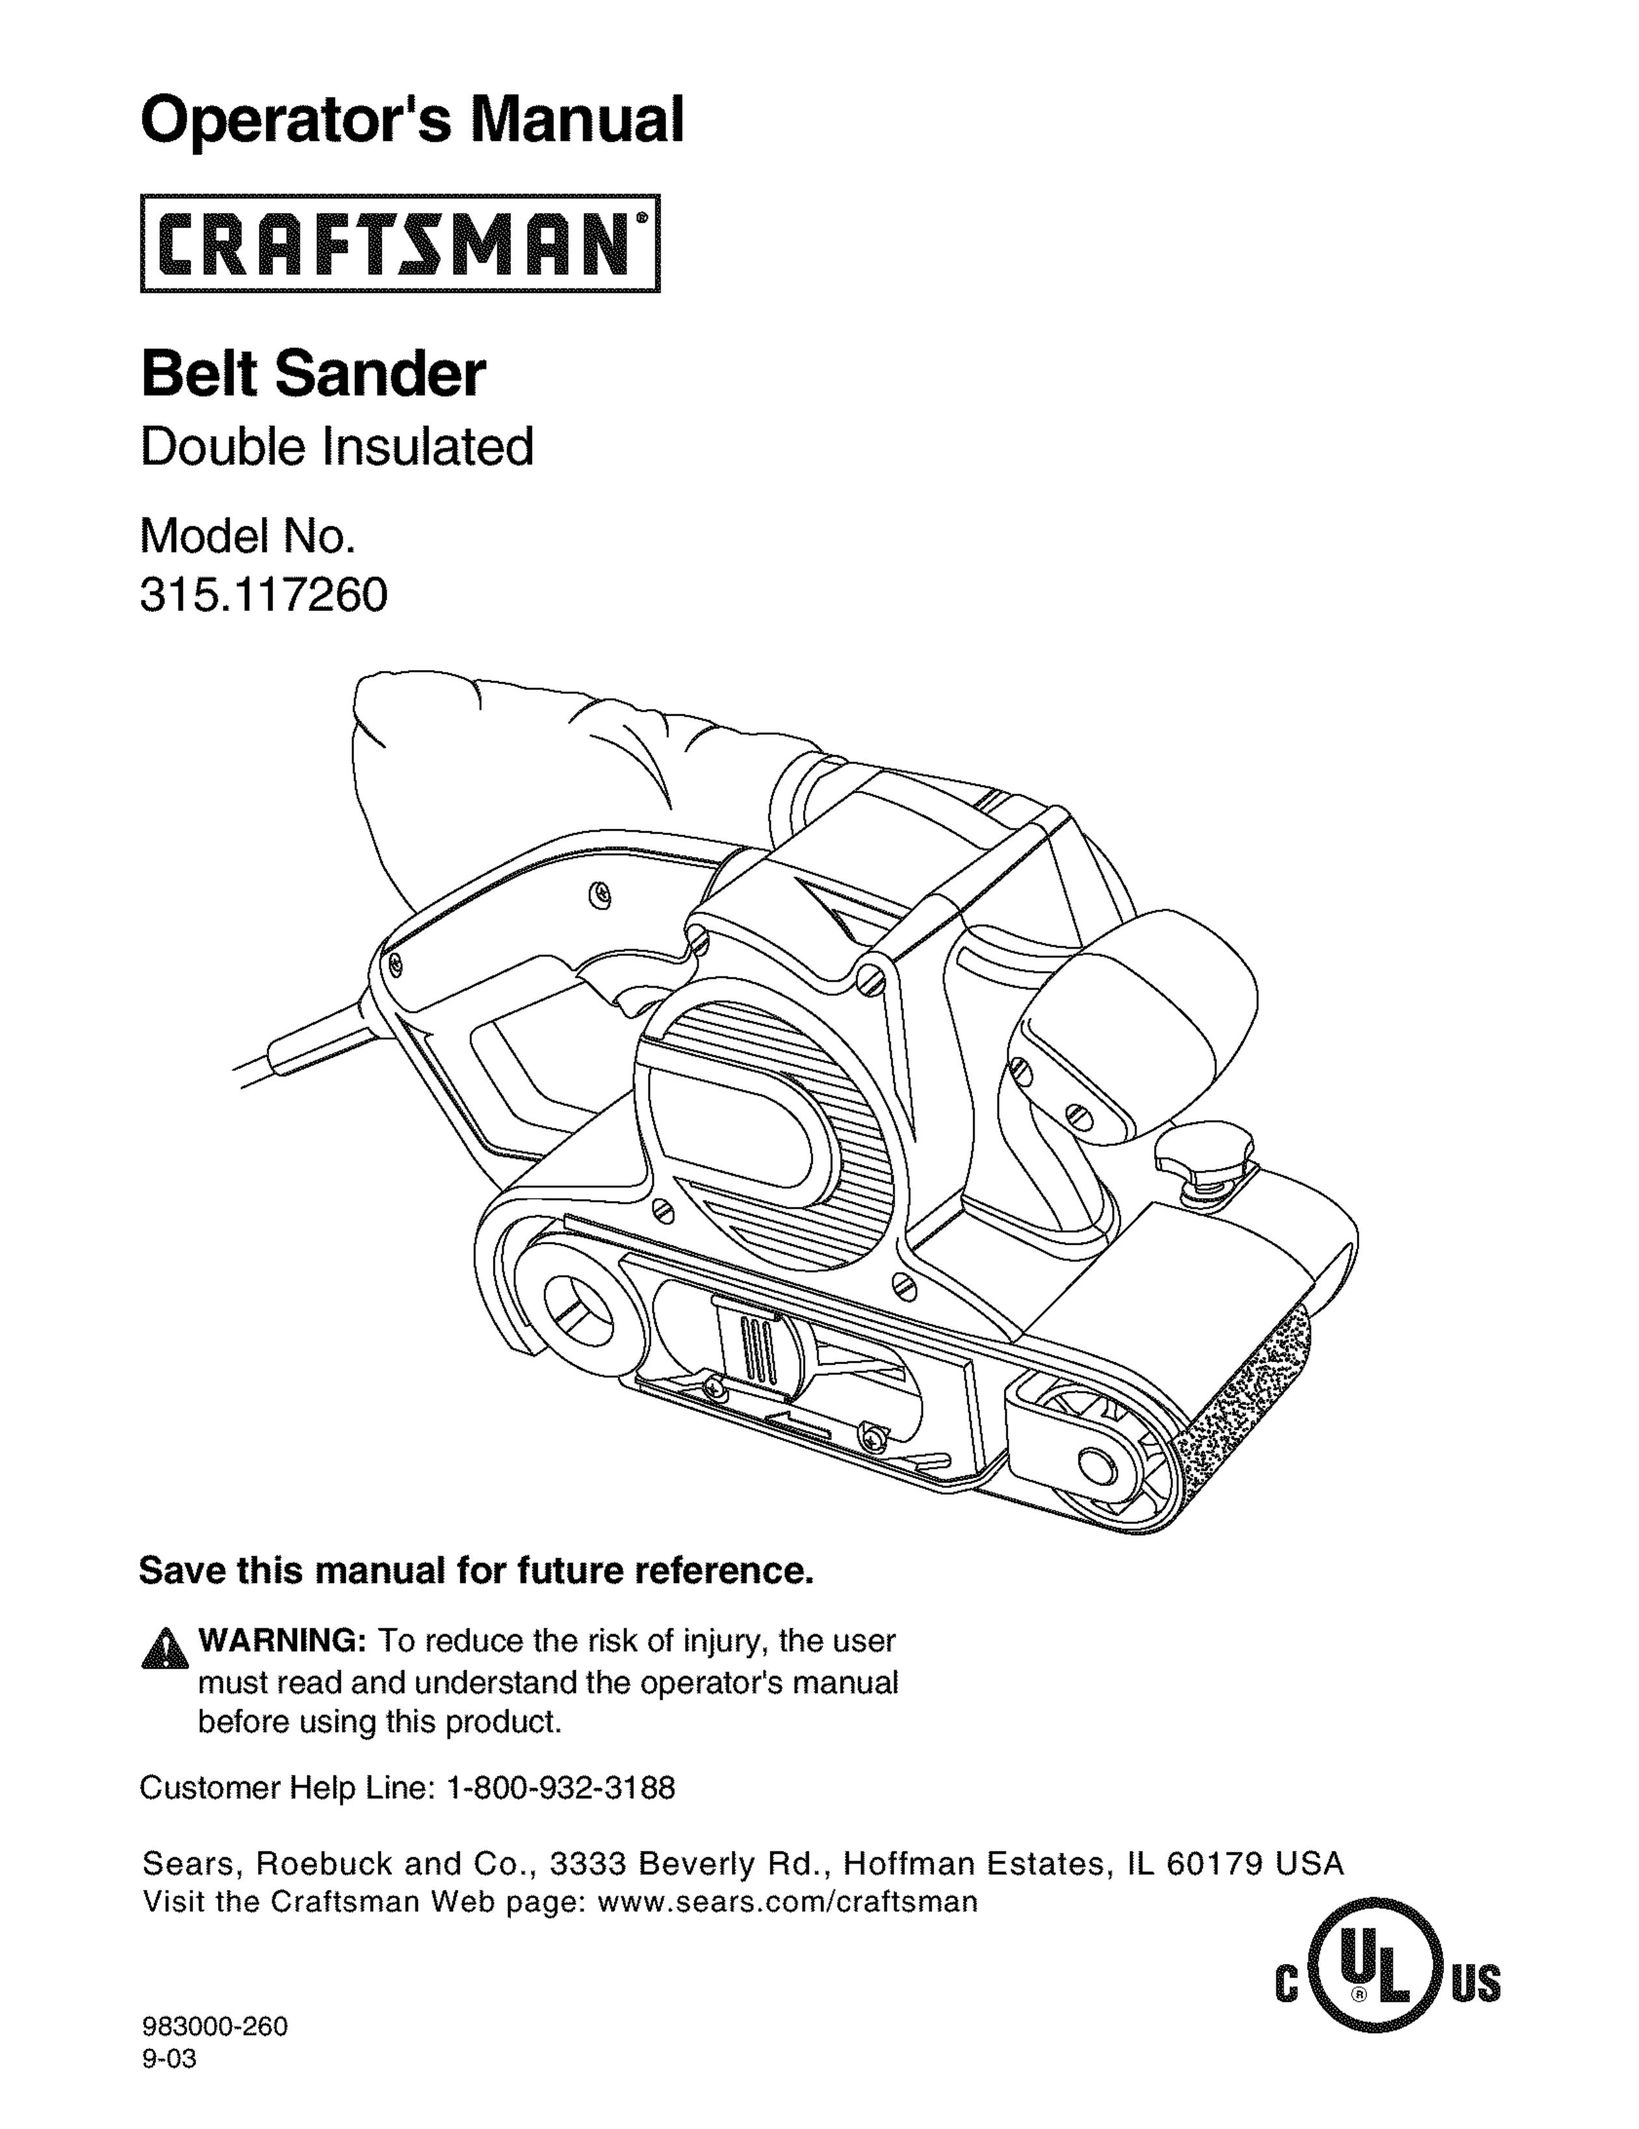 Craftsman 315.11726 Sander User Manual